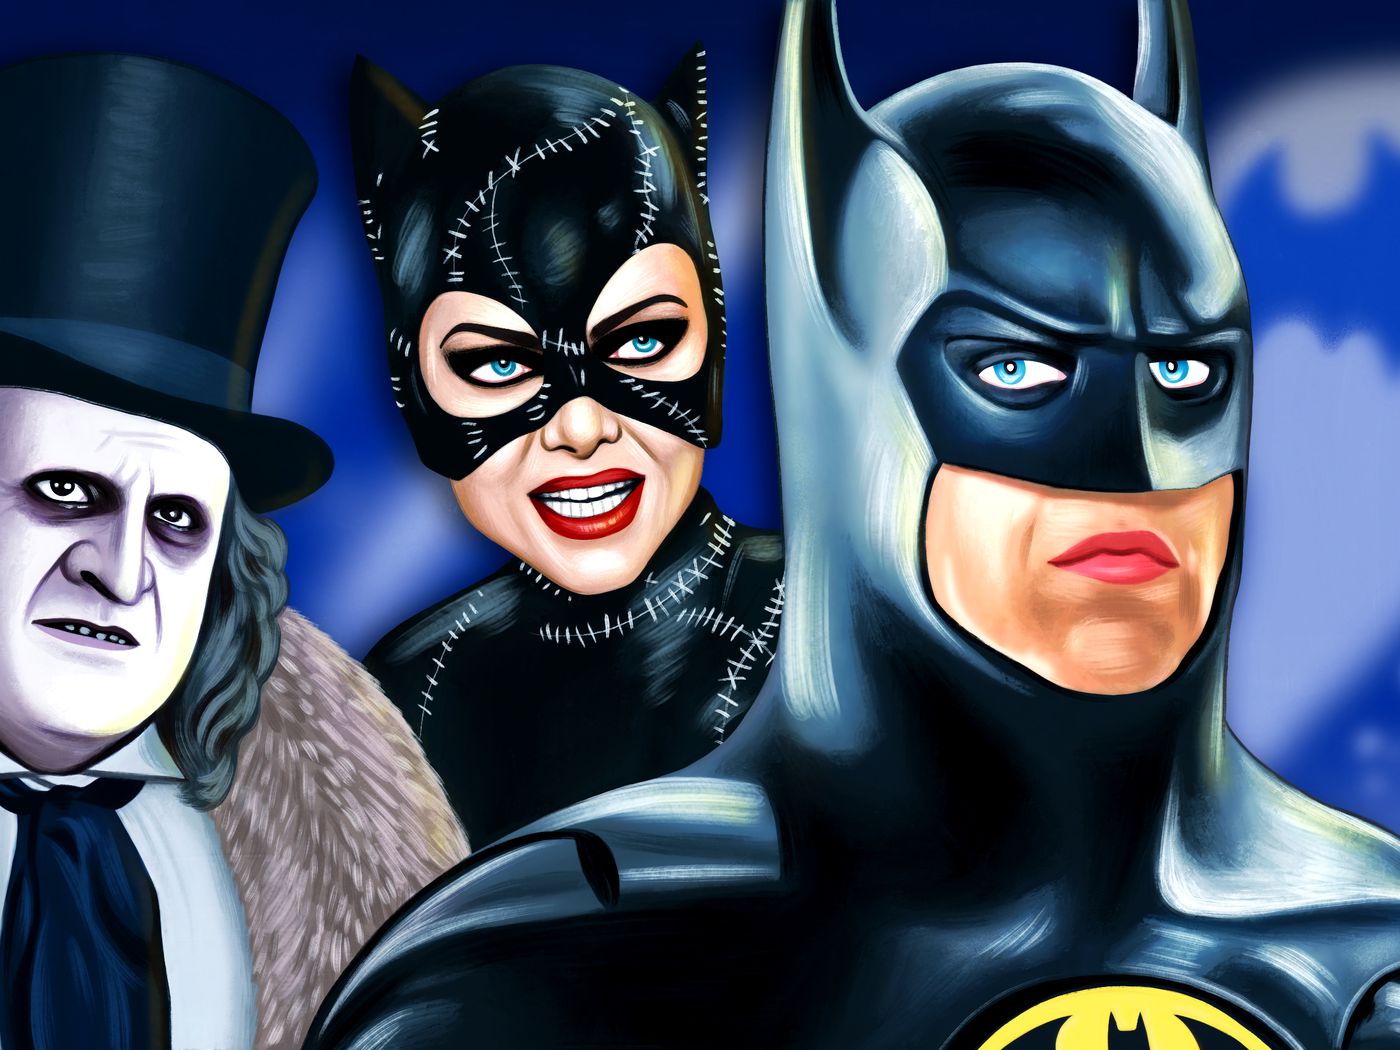 bang Uheldig højen Batman Returns' Was the Peak of Grotesque Superhero Cinema - The Ringer